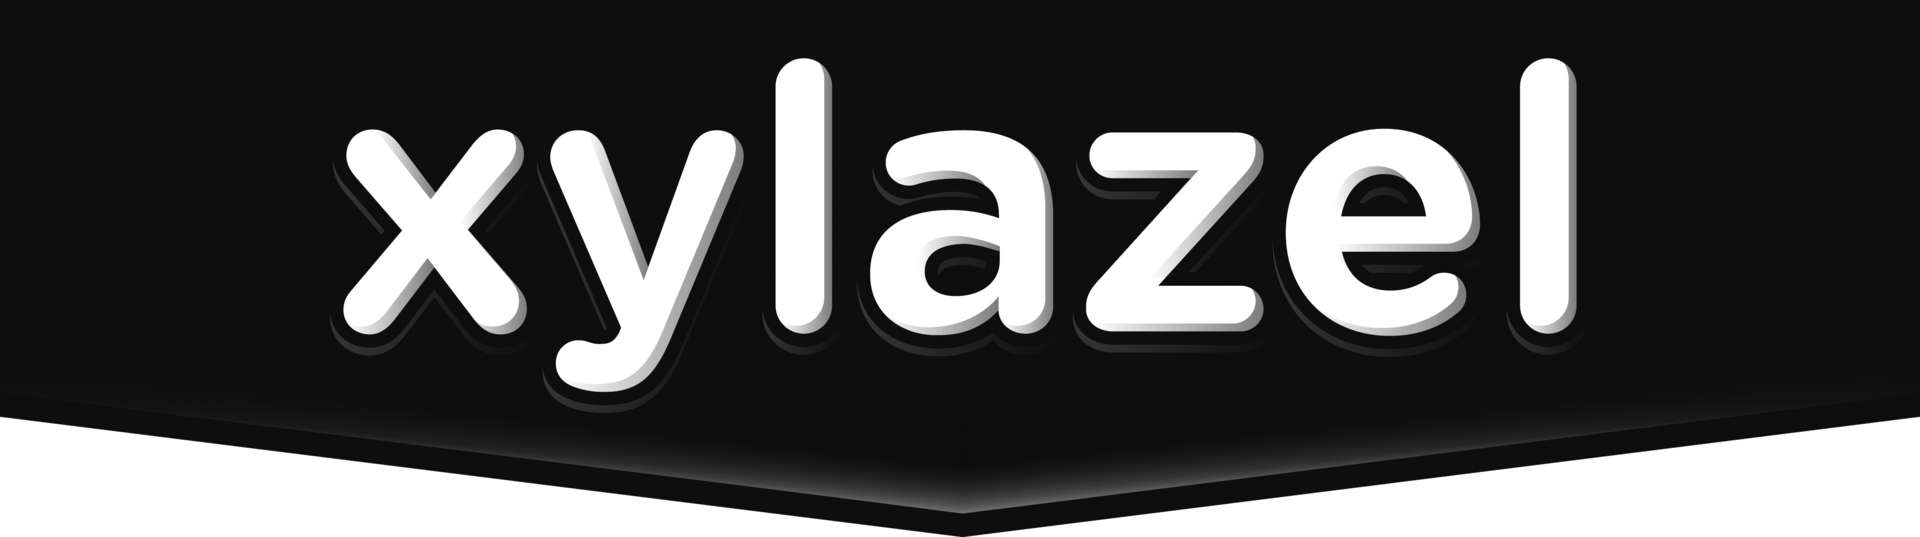 logo xylazel new copia